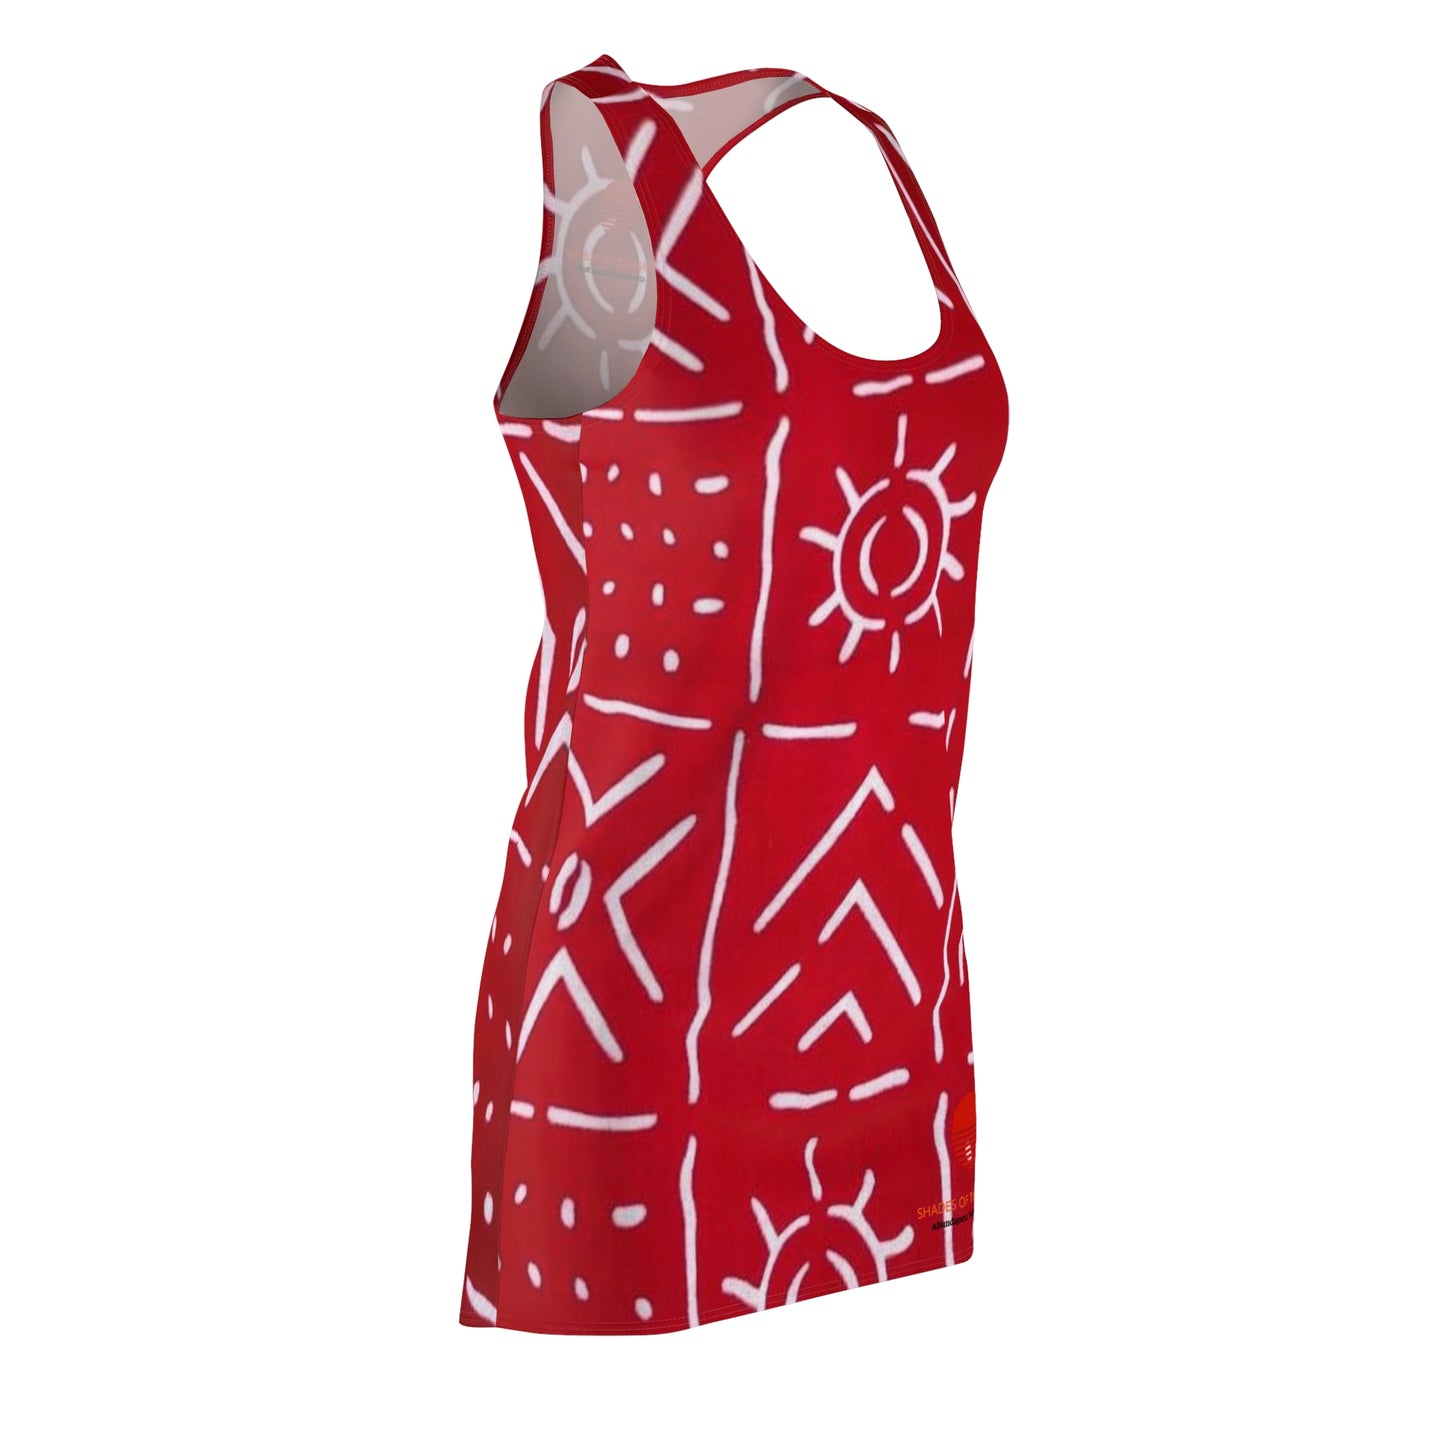 Red & White Bogolan Racerback Dress